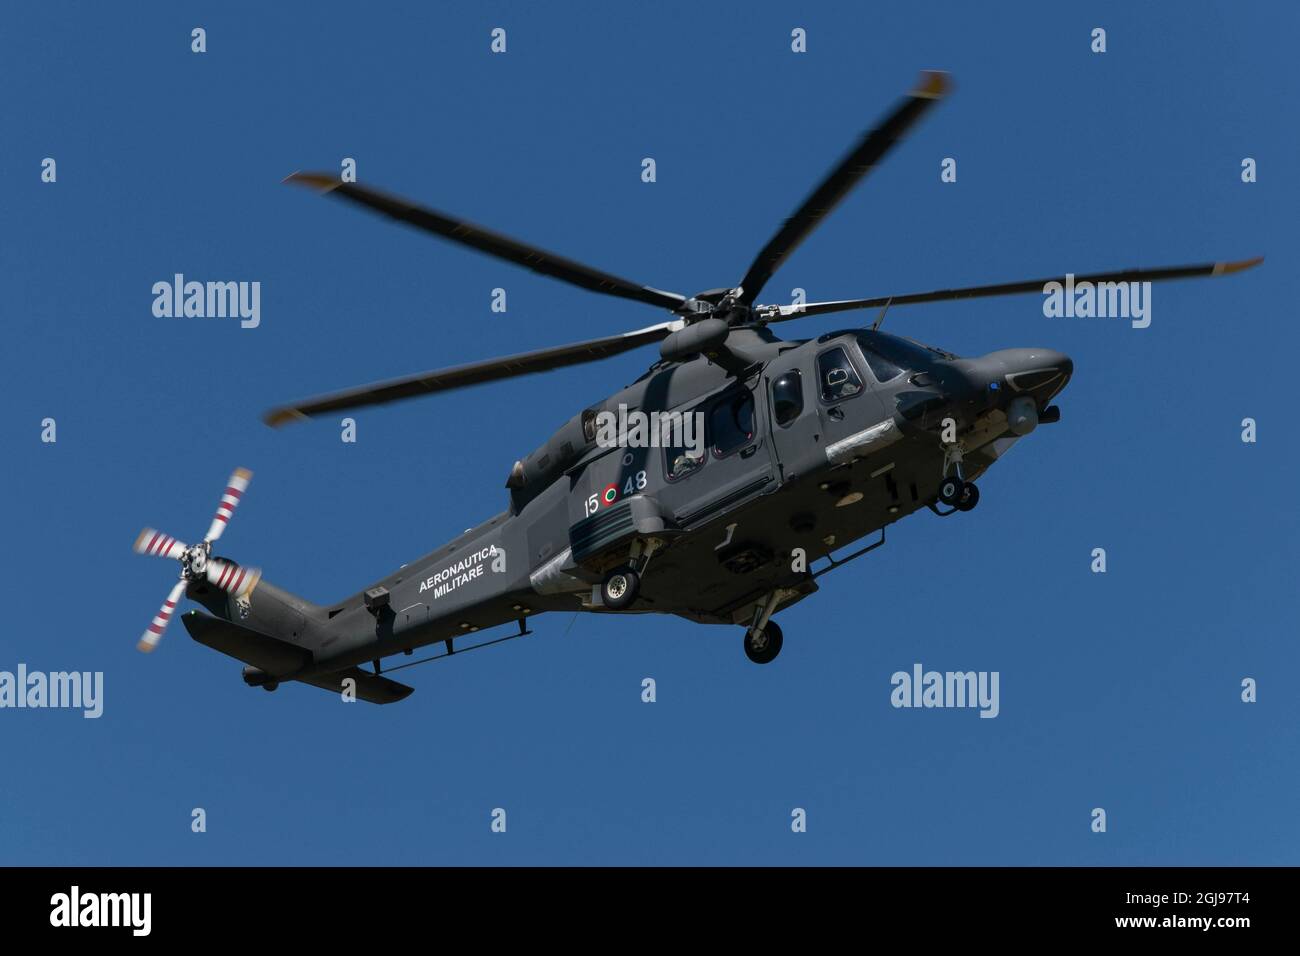 PISA, ITALIEN - 20. Mai 2018: Der Aeronautica Militare-Hubschrauber am Flughafen von Pisa in Italien Stockfoto